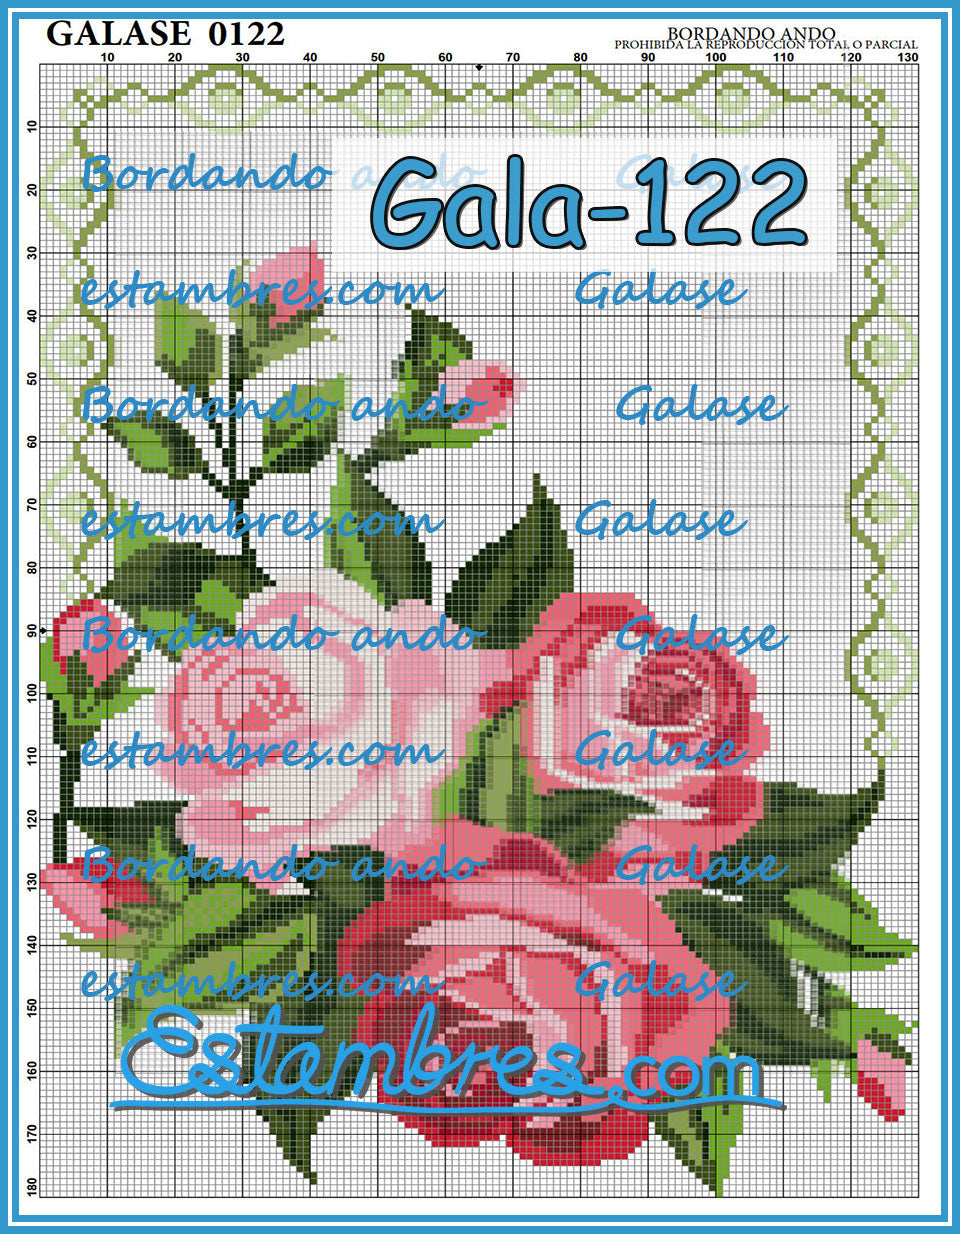 GALASE [071-140] - 2 of 5